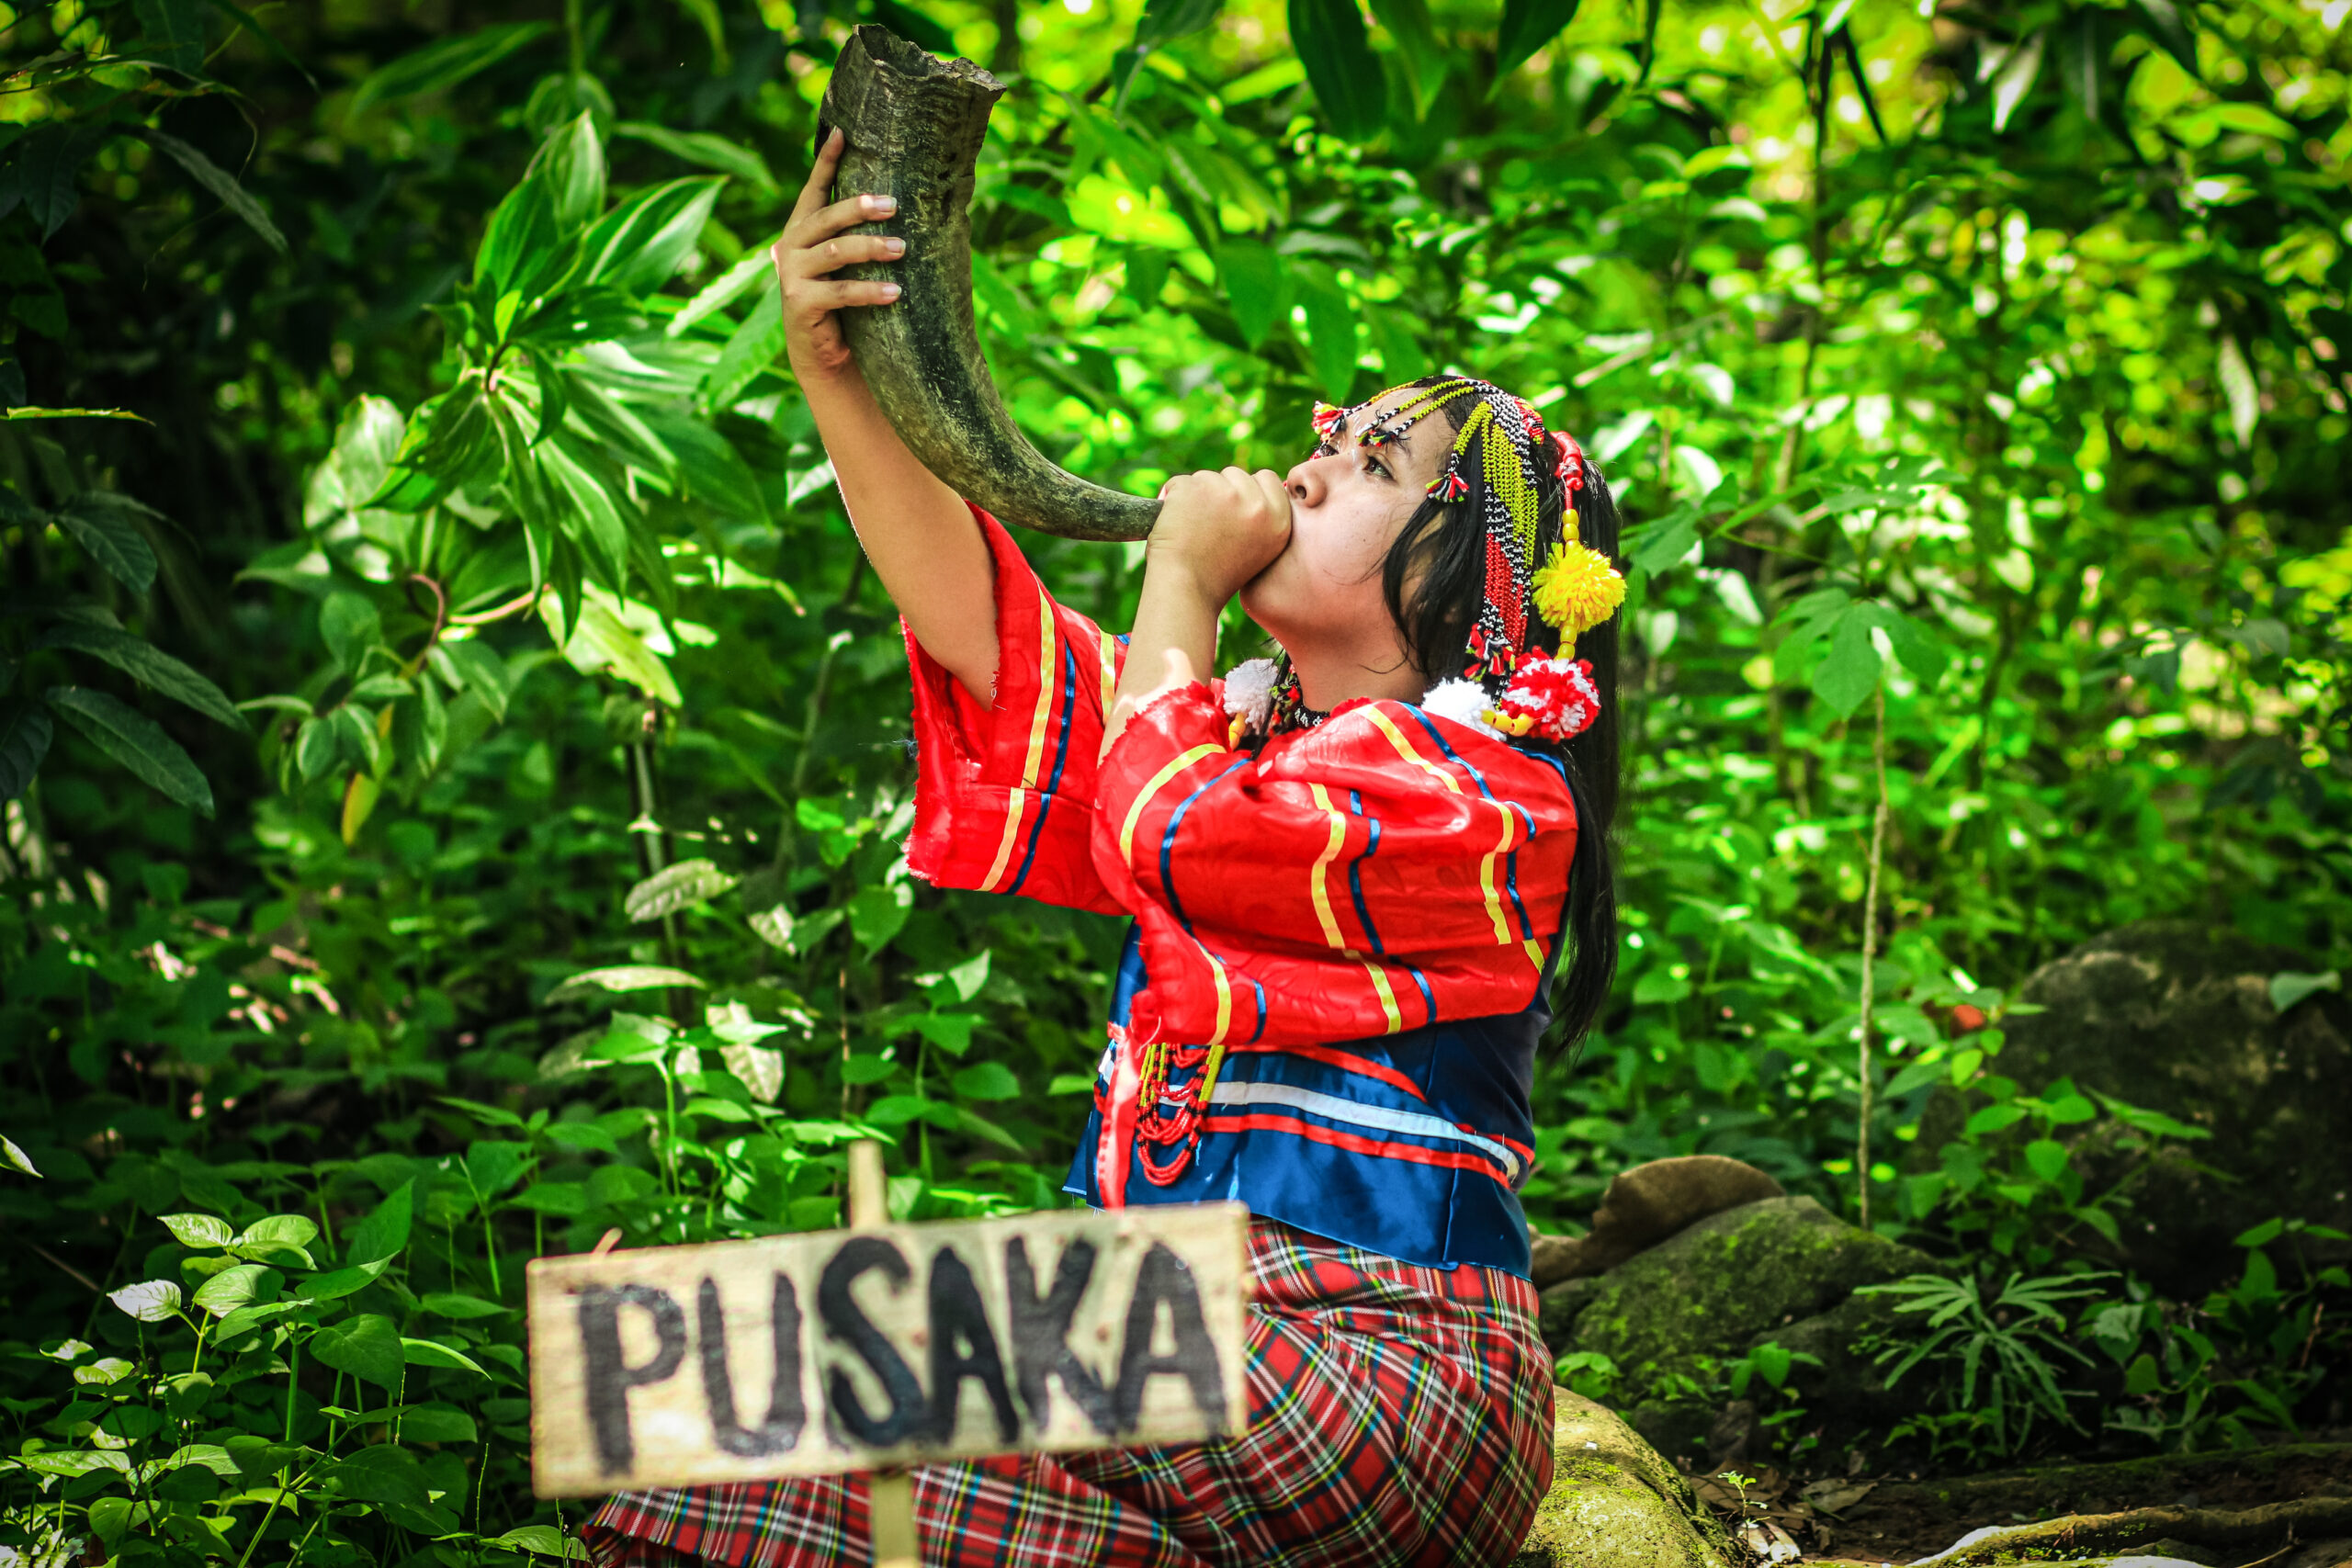 Jovem indígena da tribo Obu Manuvu da Indonésia segurando um chifre para chamar Pusaka, ela é o espírito da floresta. 
Ganhadores do Concurso de Fotografia “Soluções Inovadoras dos Povos Indígenas”
Nome da fotografia: Pusaka. 
Autor: Príncipe Loyd C. Besorio